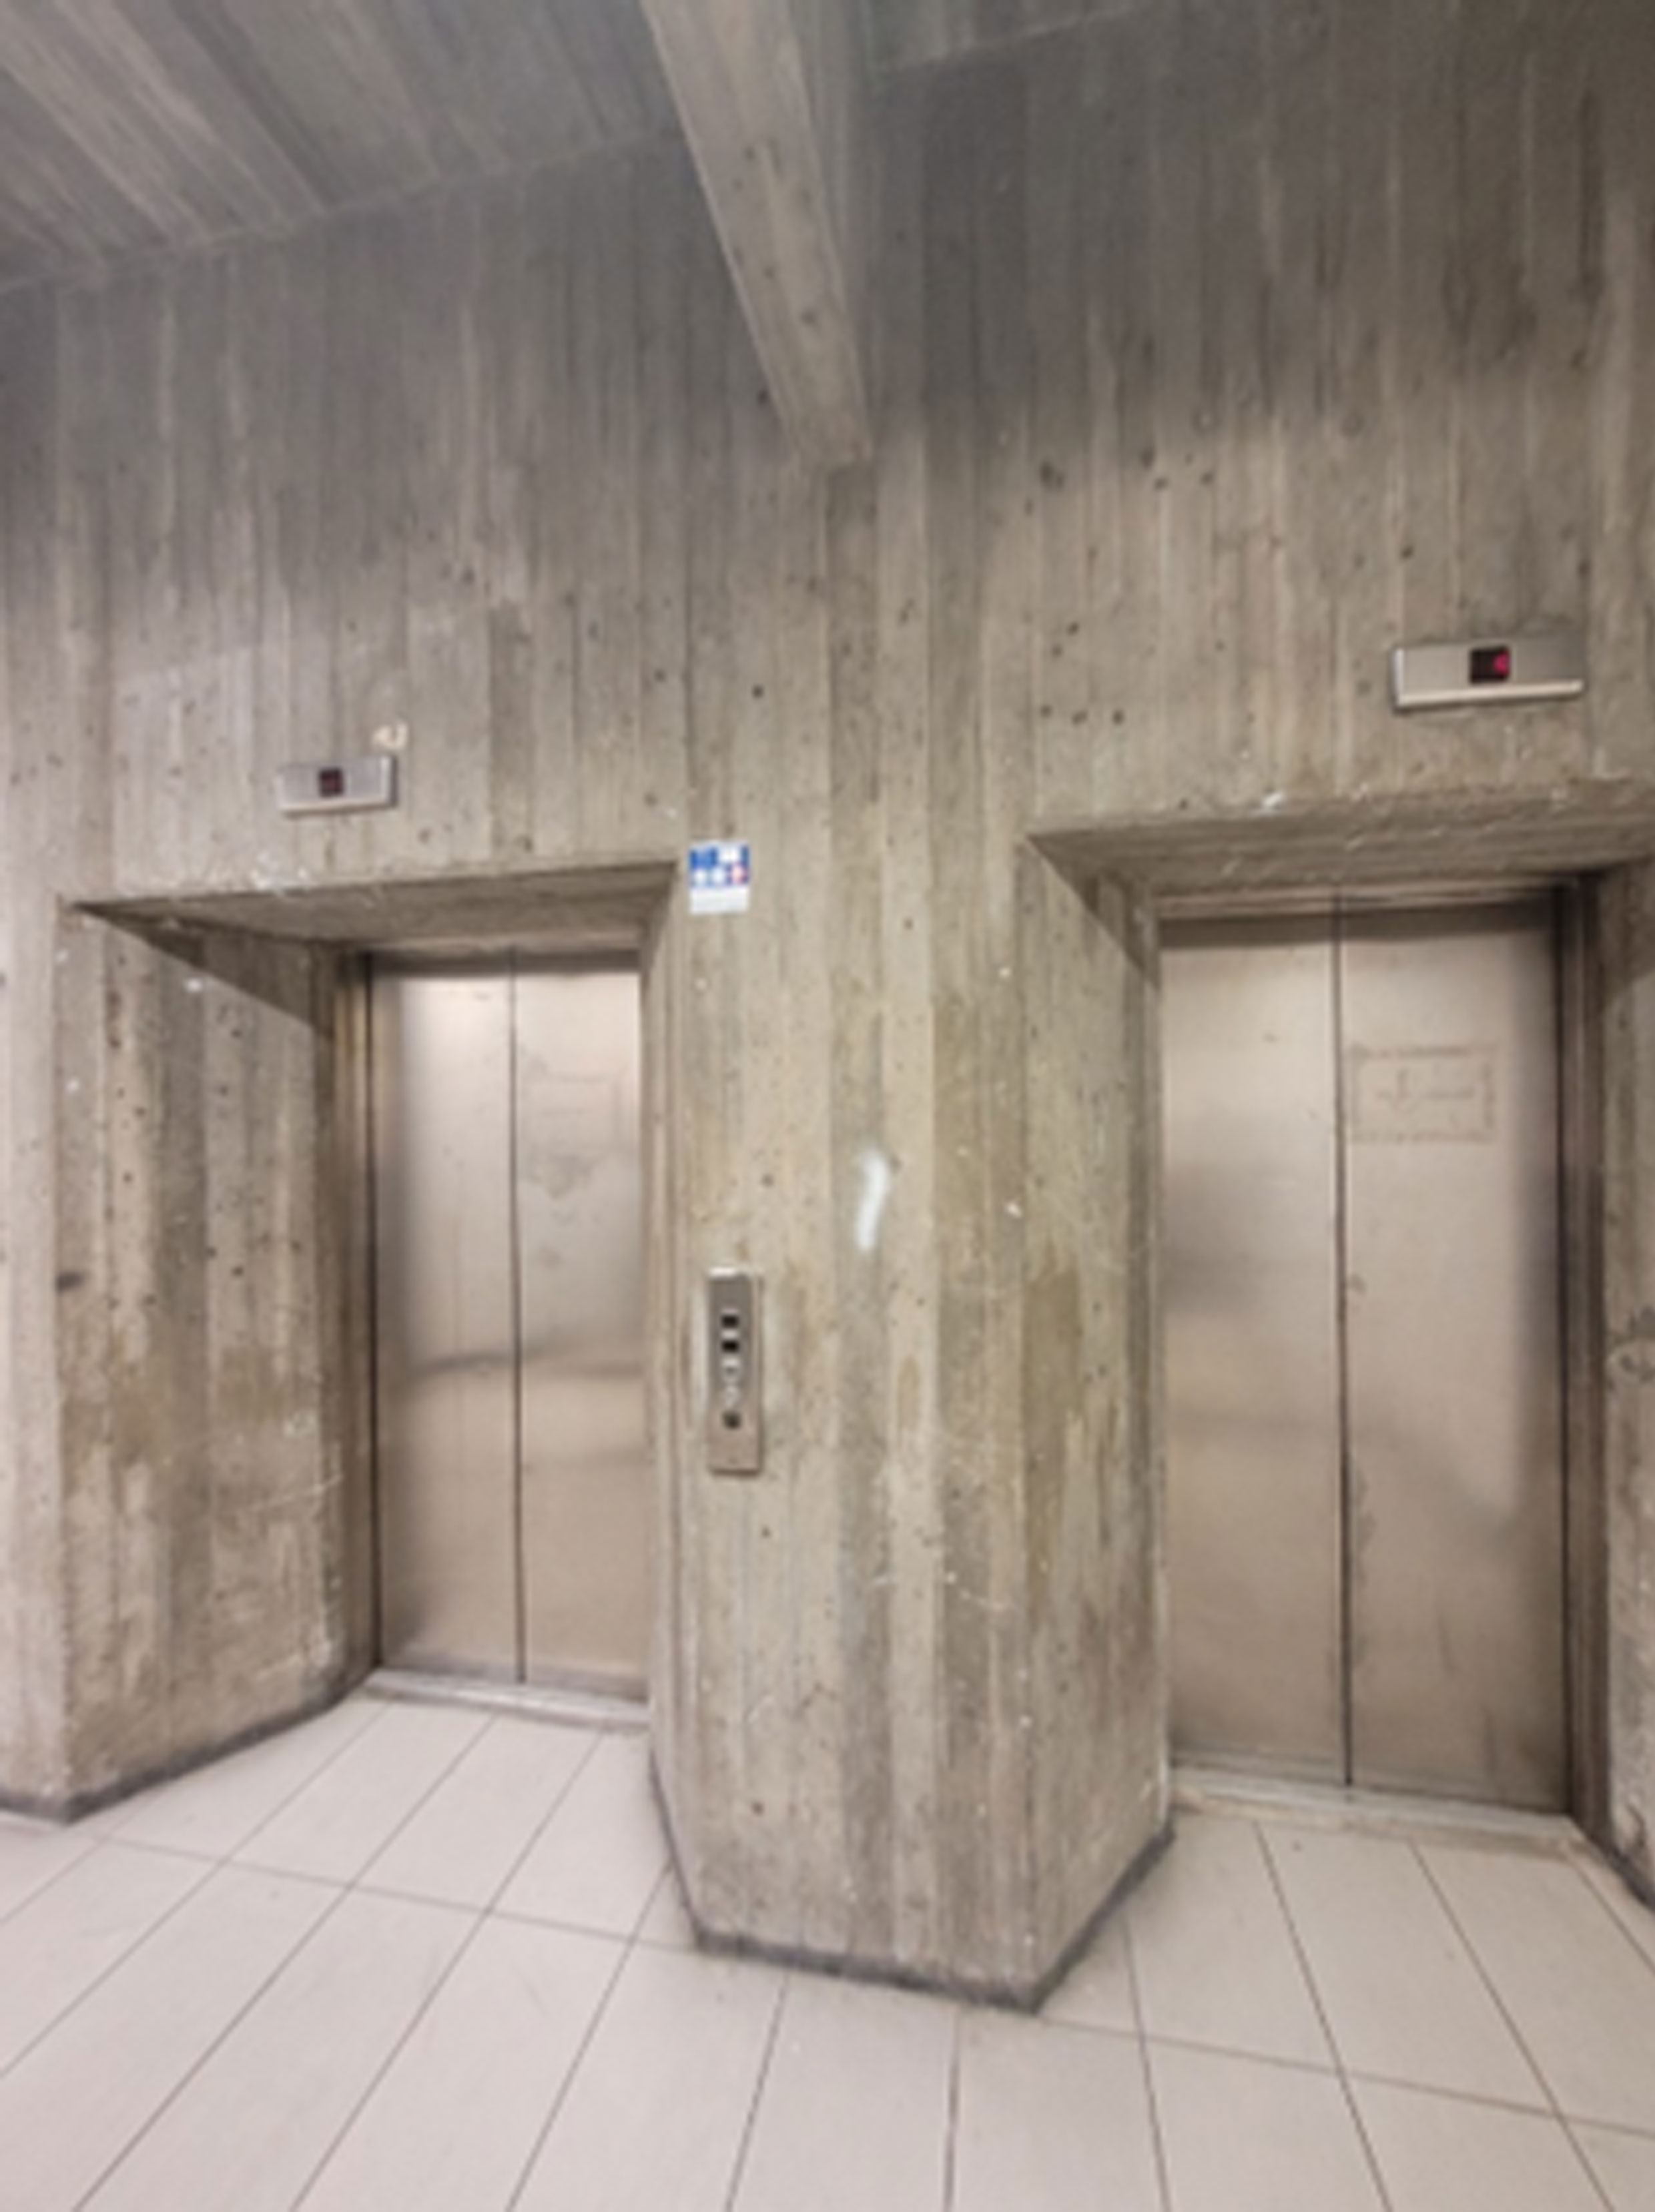 stalowe windy w nowoczesnym budynku, którego ściany wykończone są deskowaniem odbitym w surowym betonie